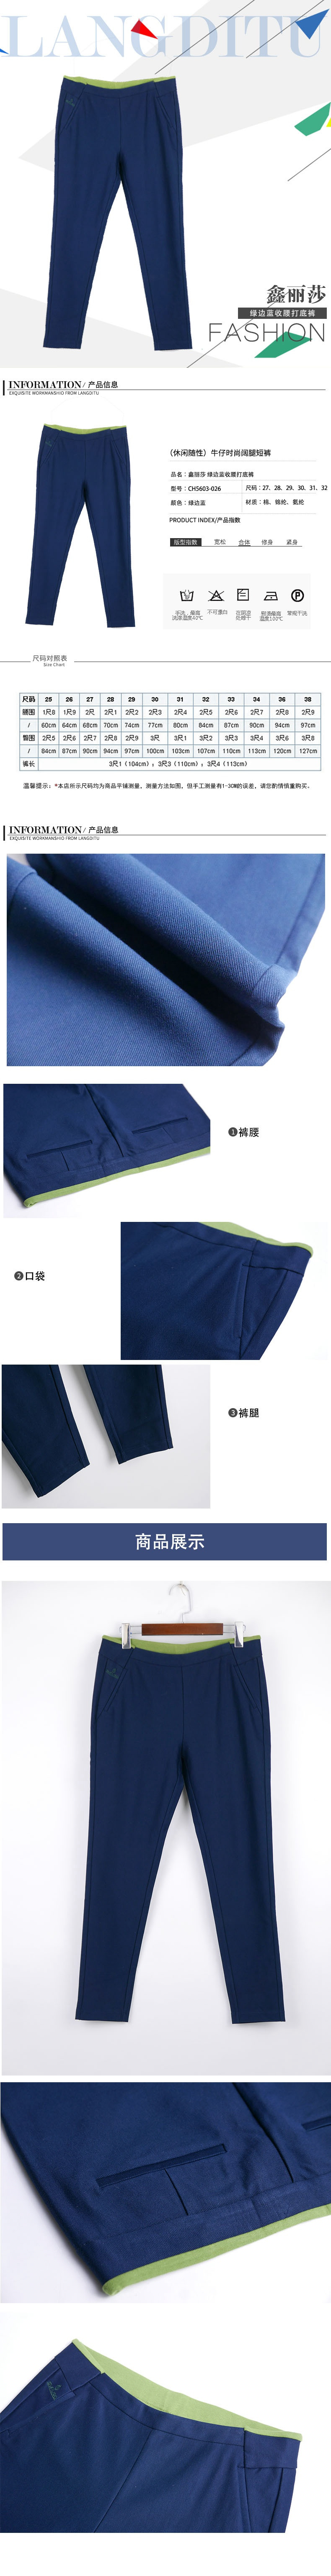 鑫丽莎 绿边蓝收腰打底裤 CH5603-026 女裤裤子